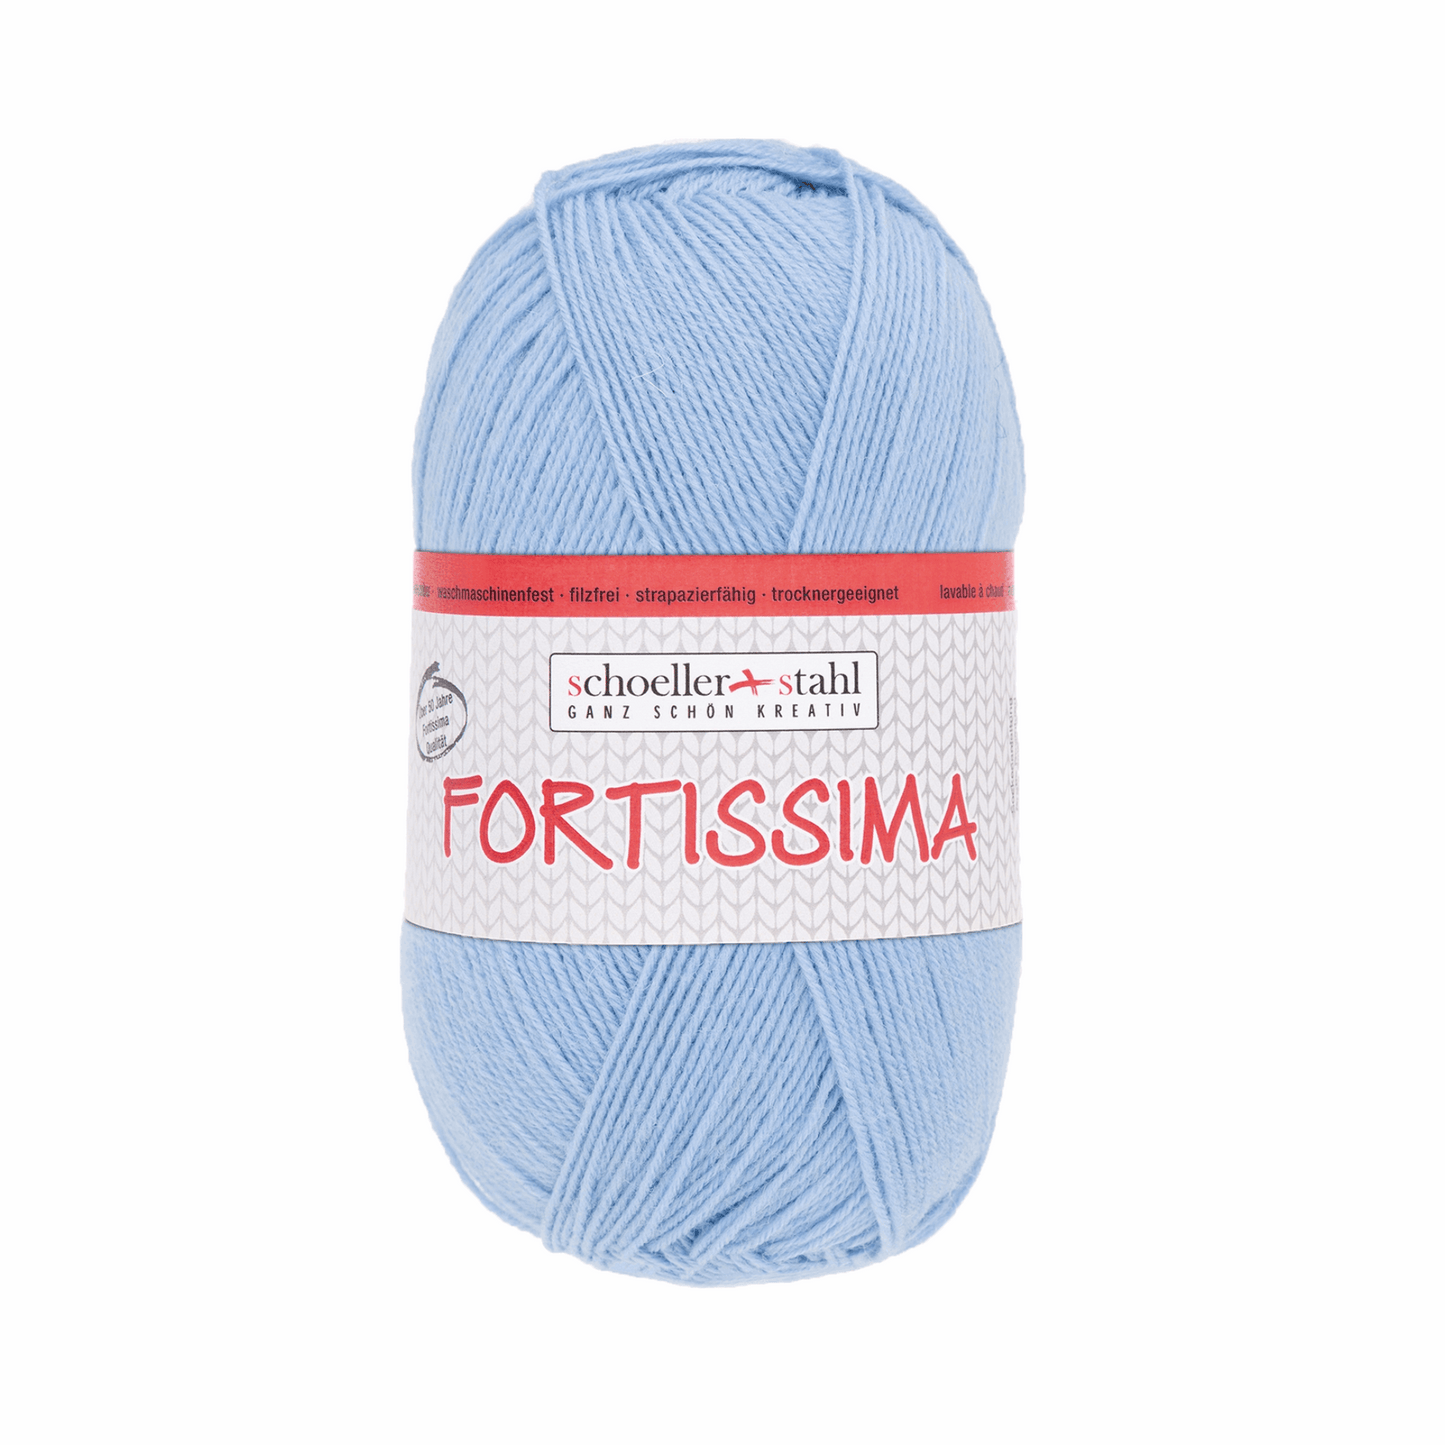 Fortissima socka 100, 90038, Farbe 2101, hellblau